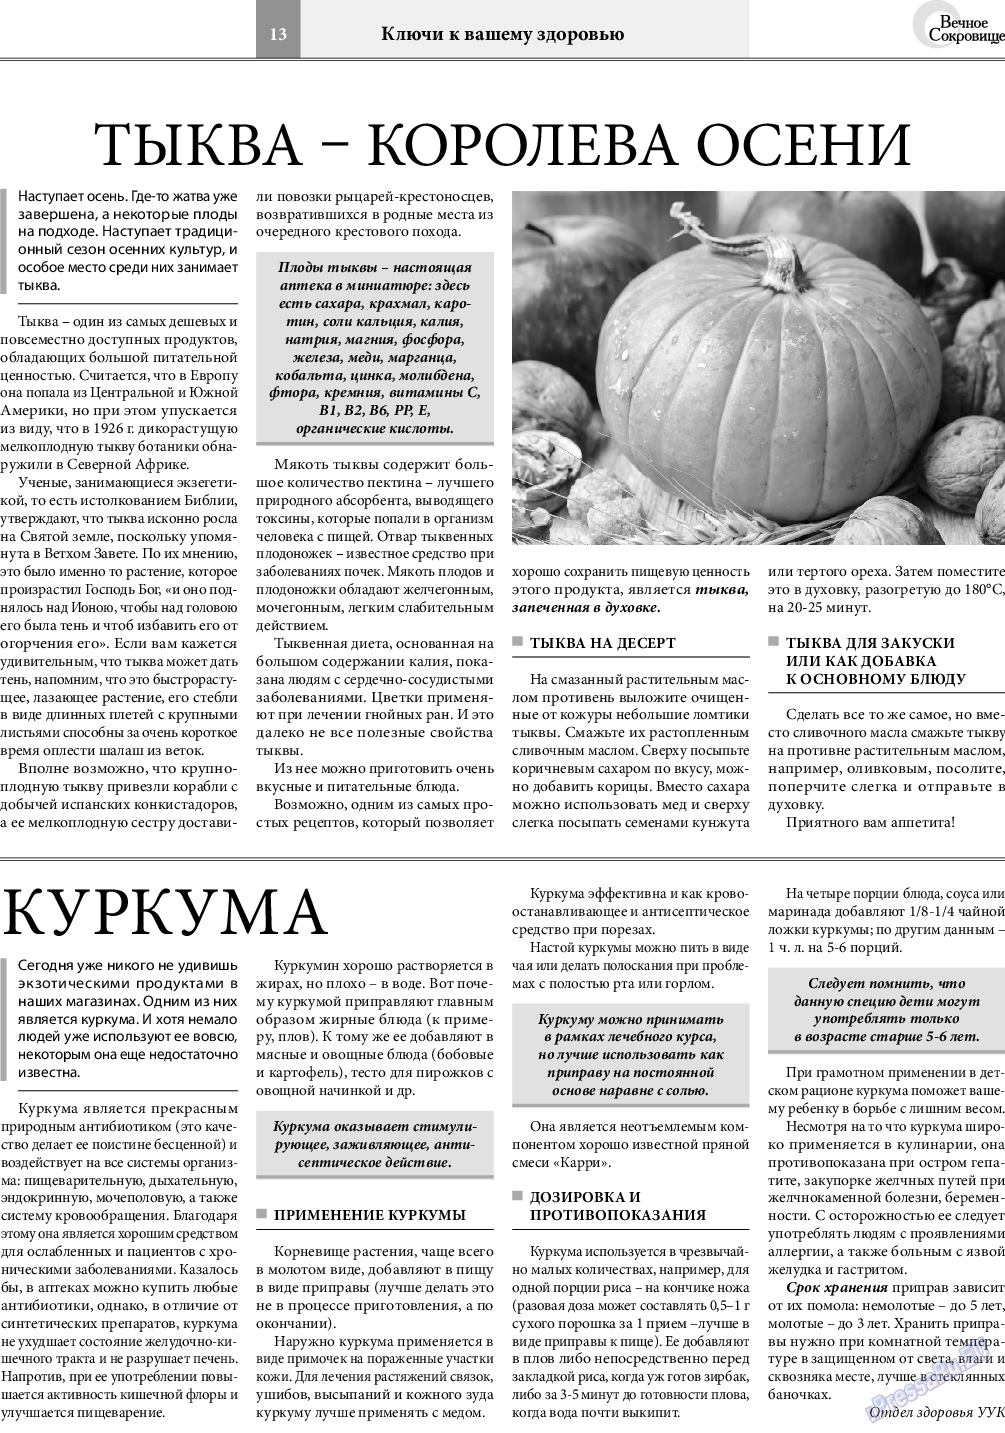 Вечное сокровище, газета. 2021 №5 стр.13